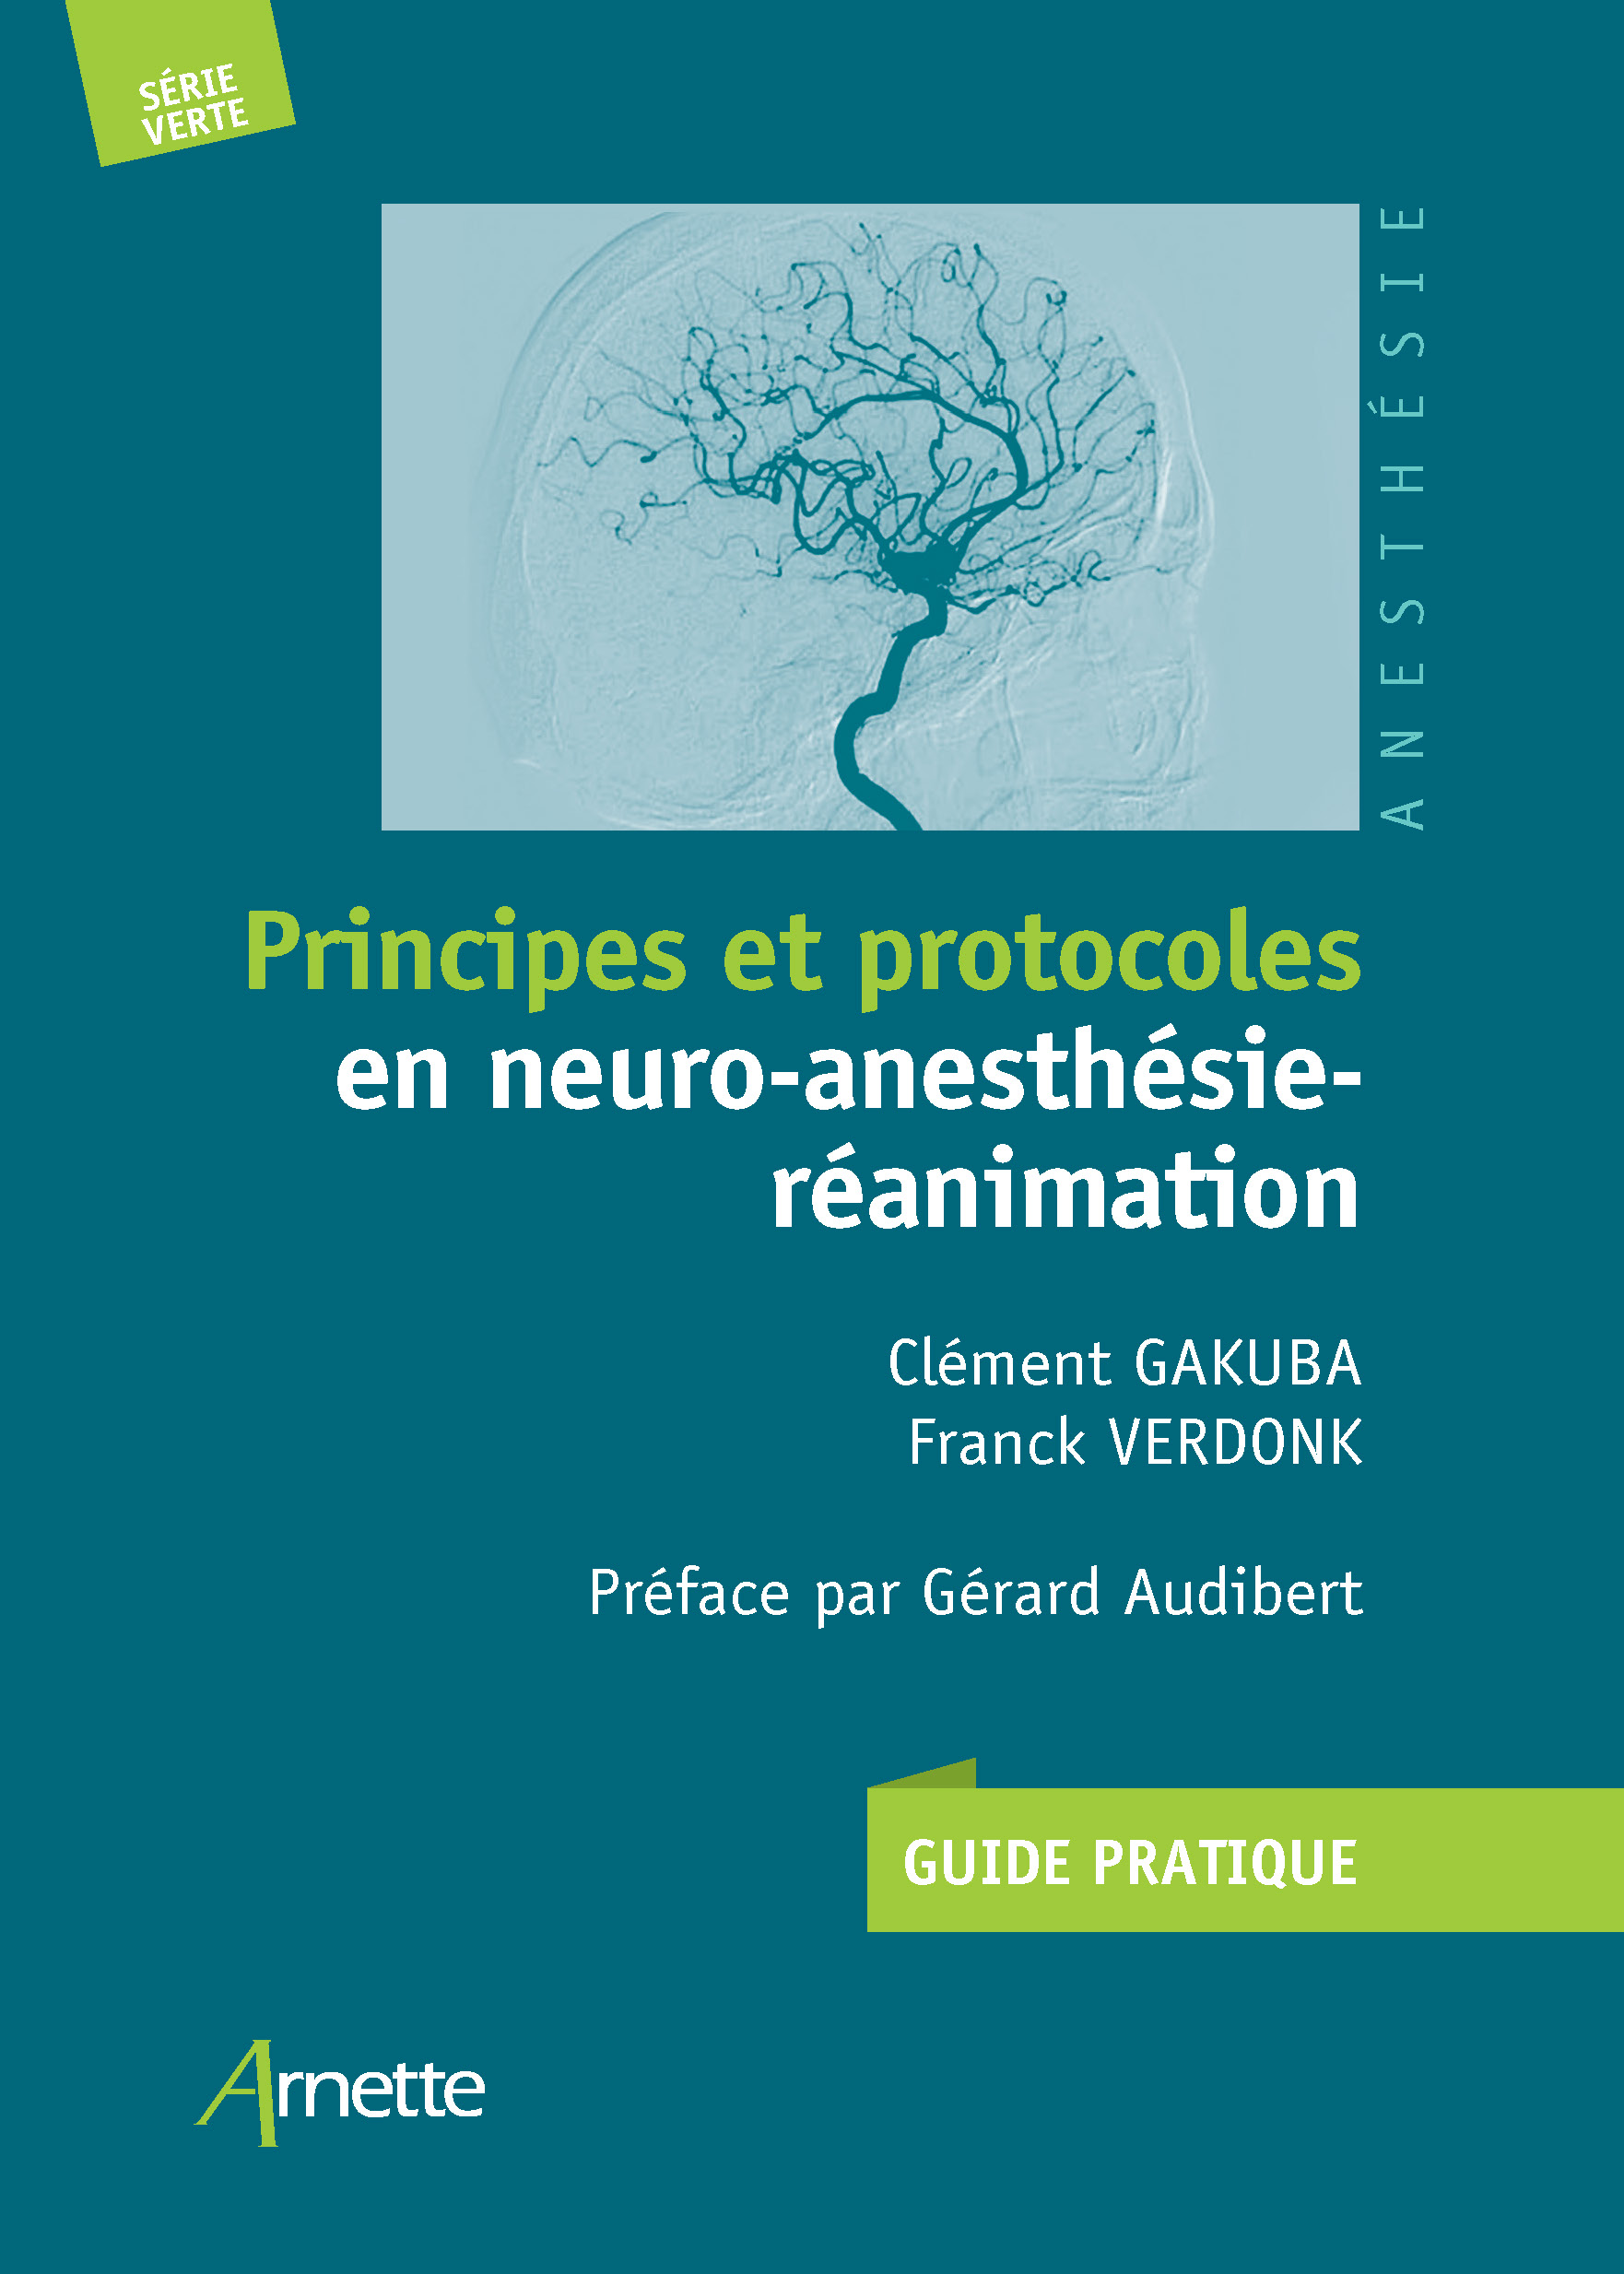 Principes et protocoles en neuro-anesthésie-réanimation